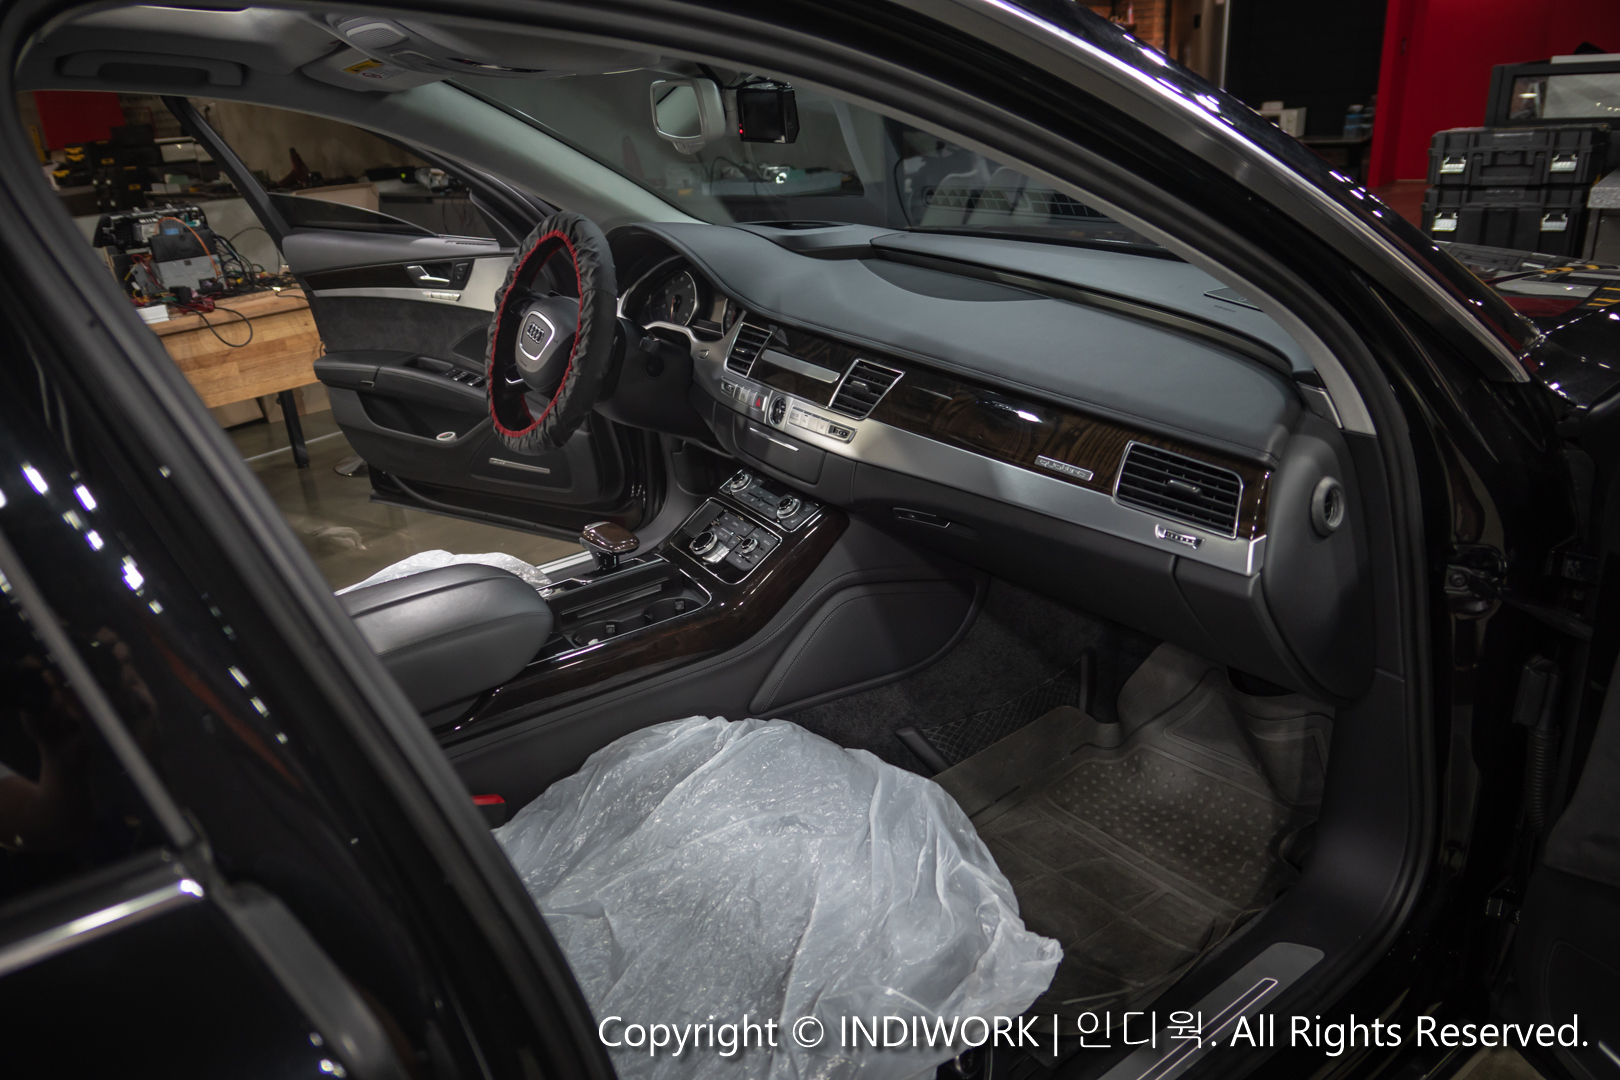 2015 Audi A8 D4 Interior